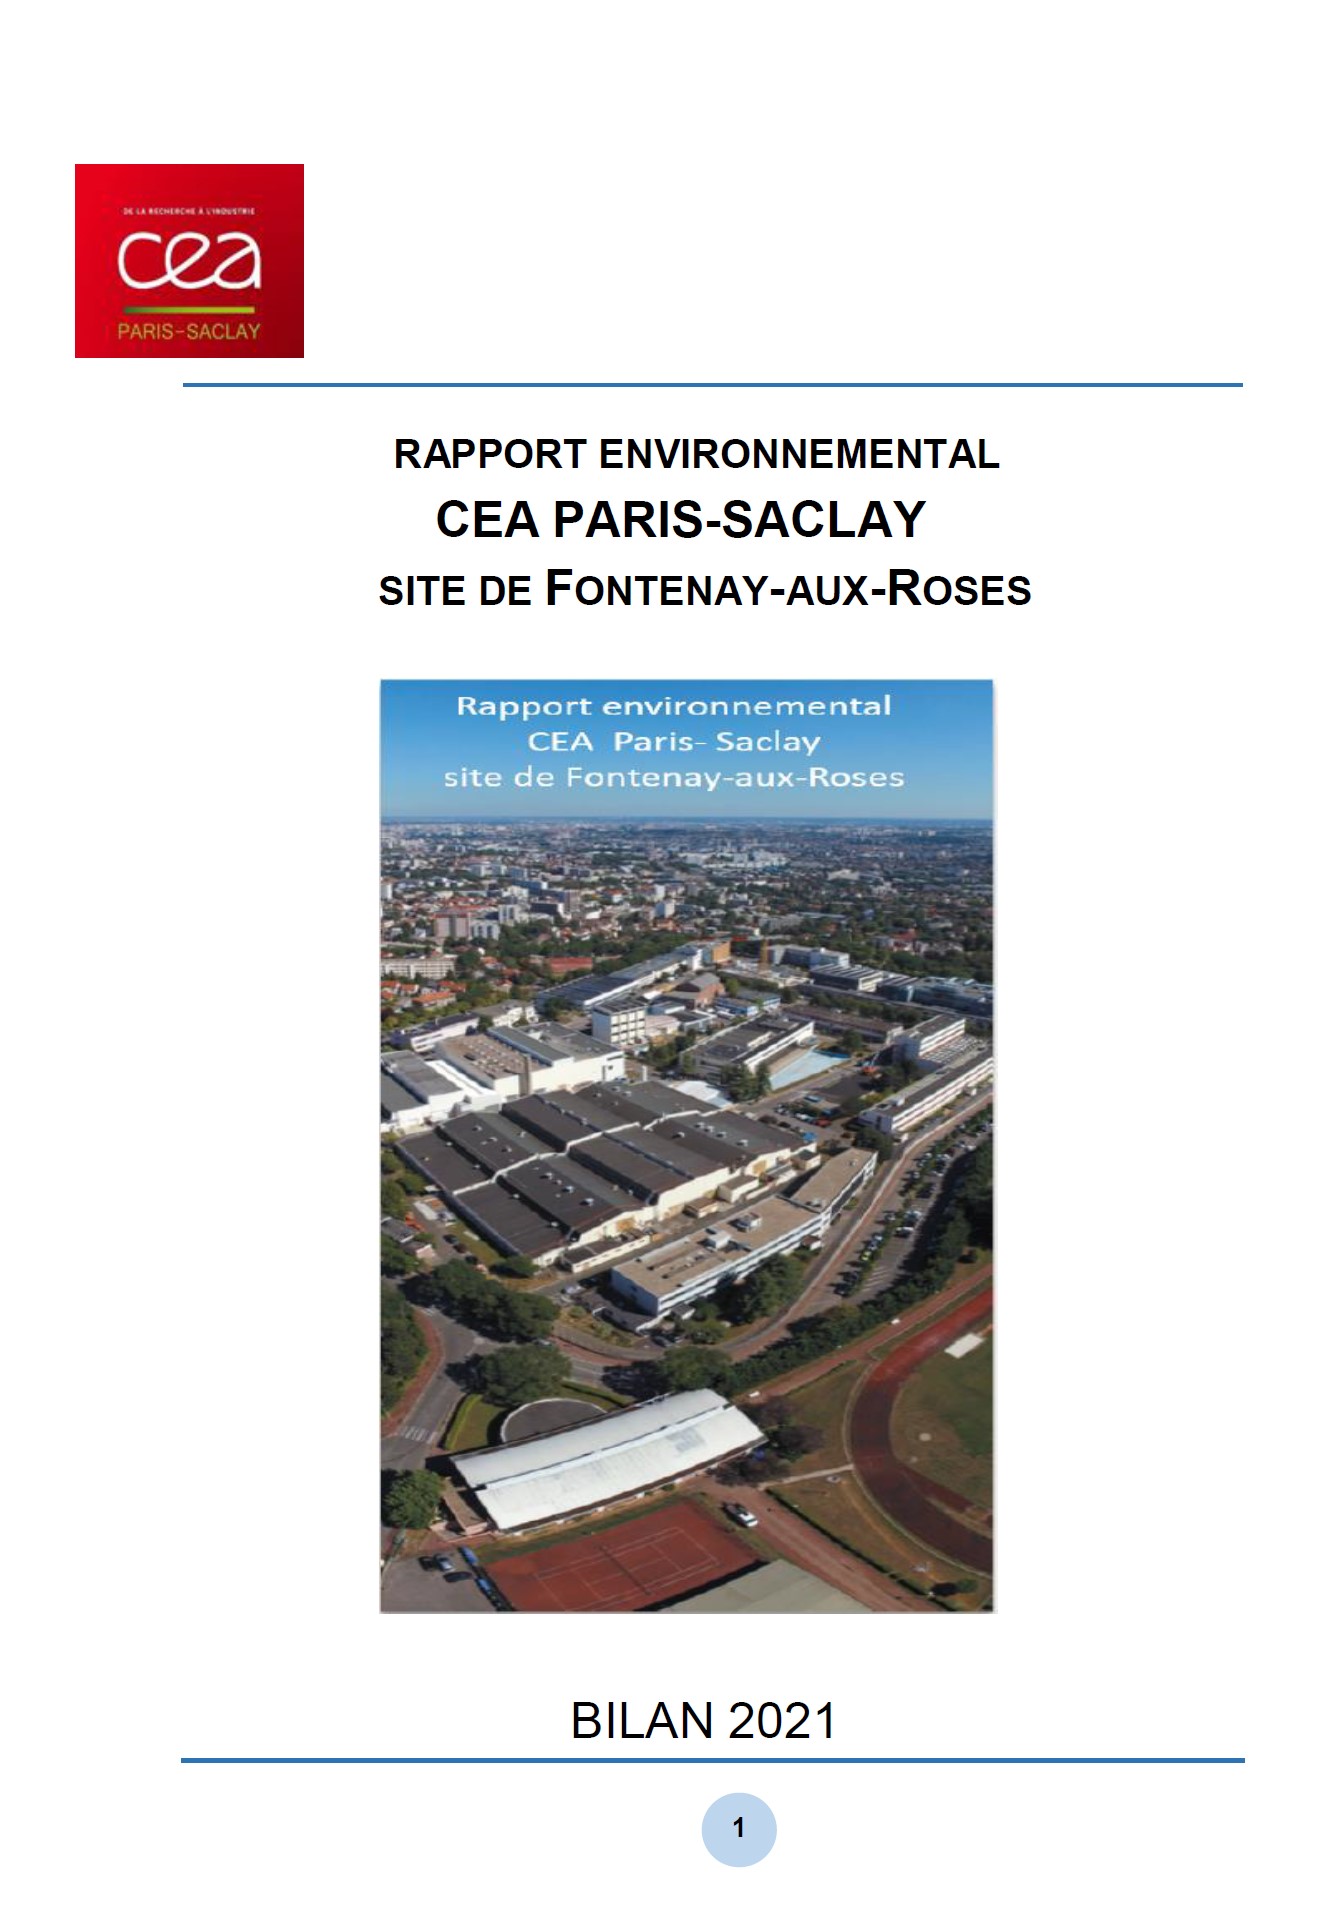 Rapport environnemental 2021, CEA Paris-Saclay, site de Fontenay-aux-Roses